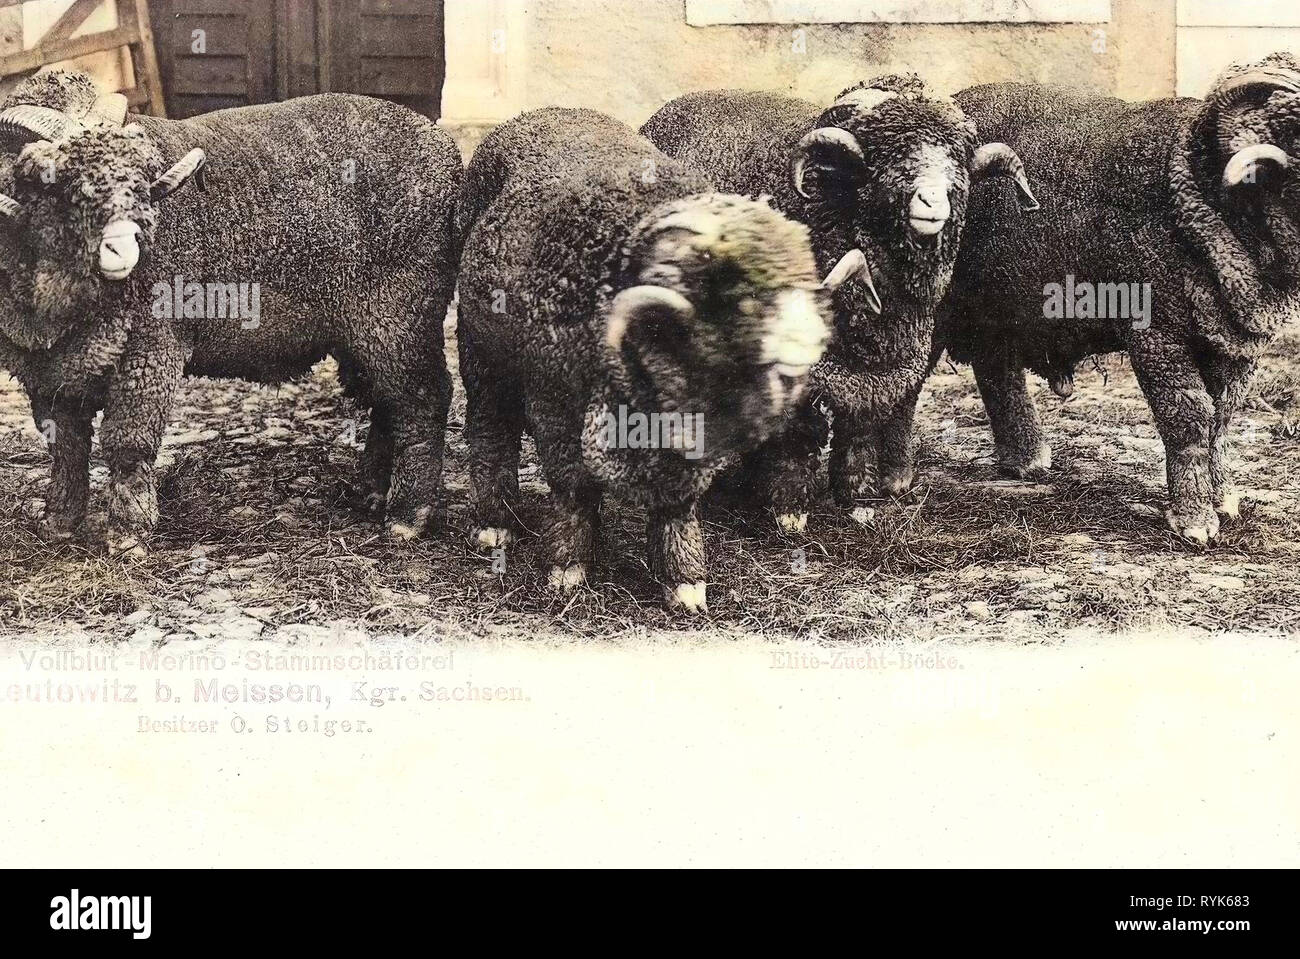 Shepherds in Germany, Sheep husbandry in Germany, Sheep in Germany, Leutewitz (Käbschütztal), 1901, Landkreis Meißen, Merino (breed), Leutewitz, Elite, Zucht, Böcke, Stammschäferei Stock Photo